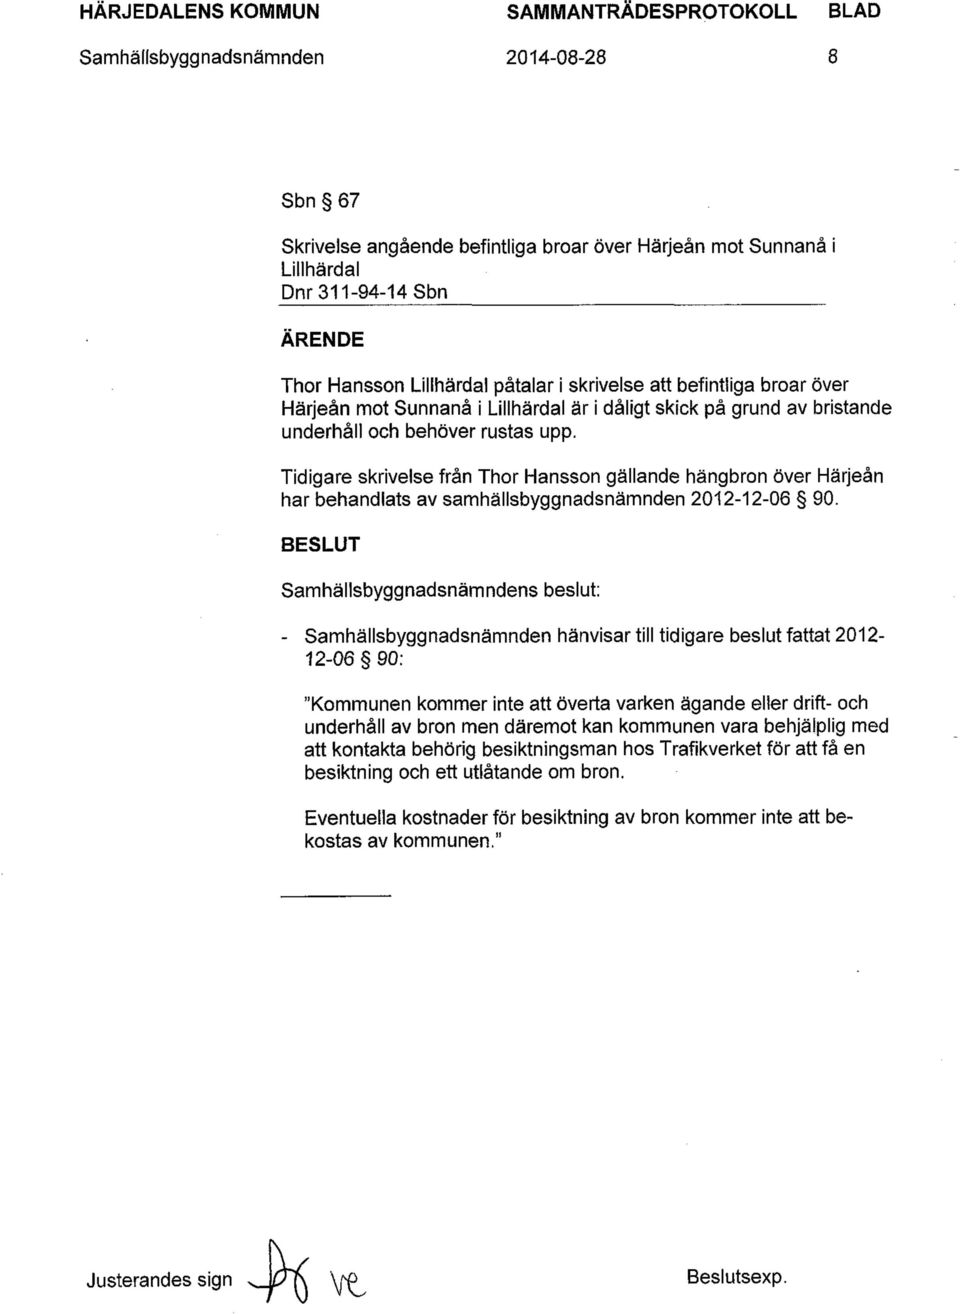 Tidigare skrivelse fran Thor Hansson gallande hangbron over Harjean har behandlats av samhallsbyggnadsnamnden 2012-12-06 90.